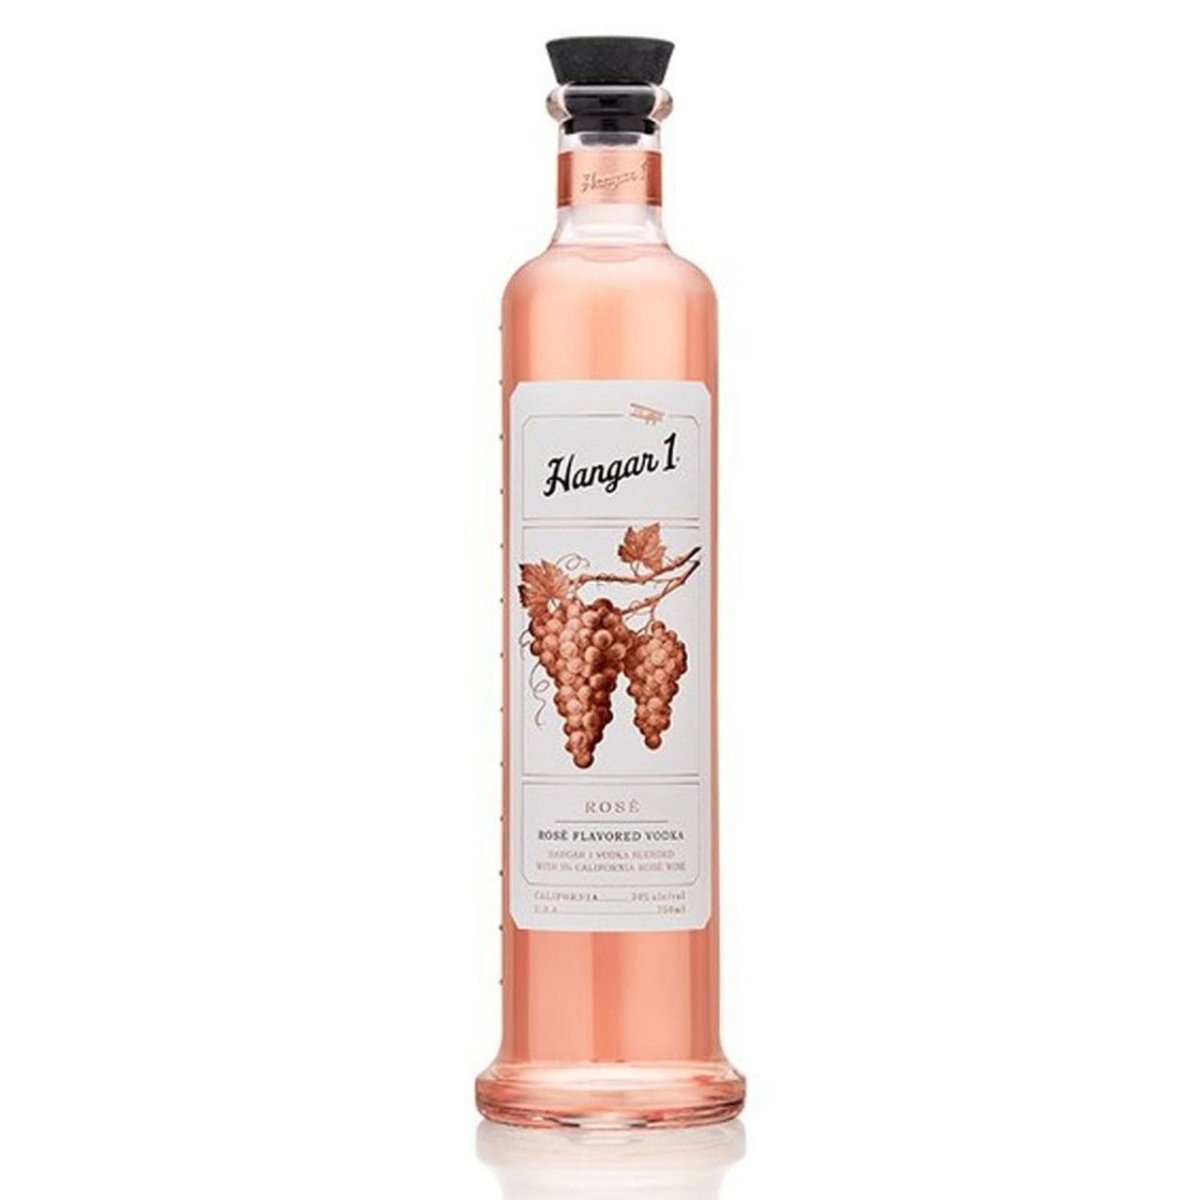 Hangar 1 - Rose Flavored Vodka (750ML) - The Epicurean Trader